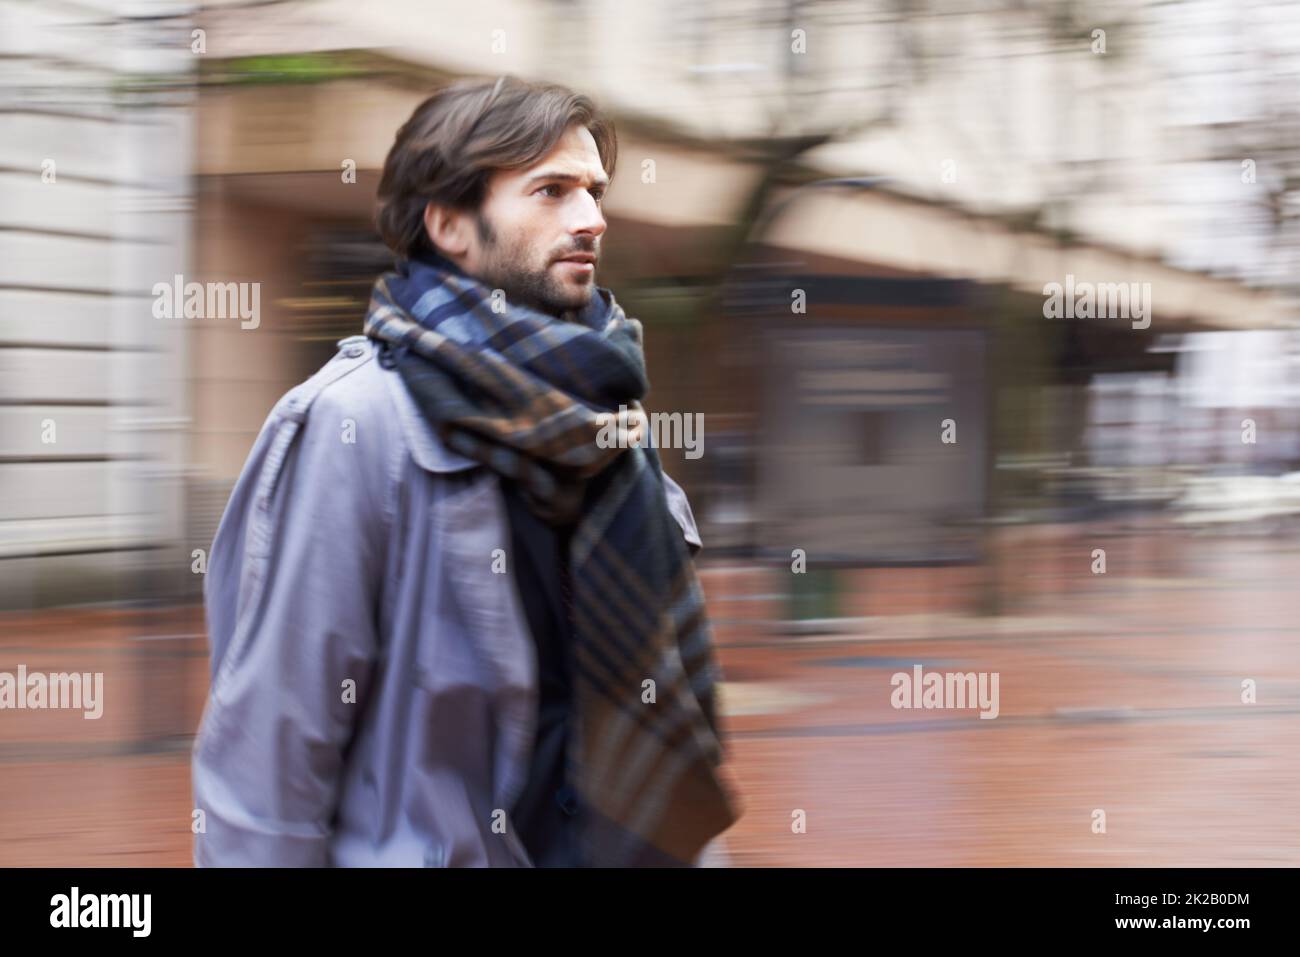 La vita cittadina può essere frenetica. Un bell'uomo che cammina in un'area urbana in fretta. Foto Stock